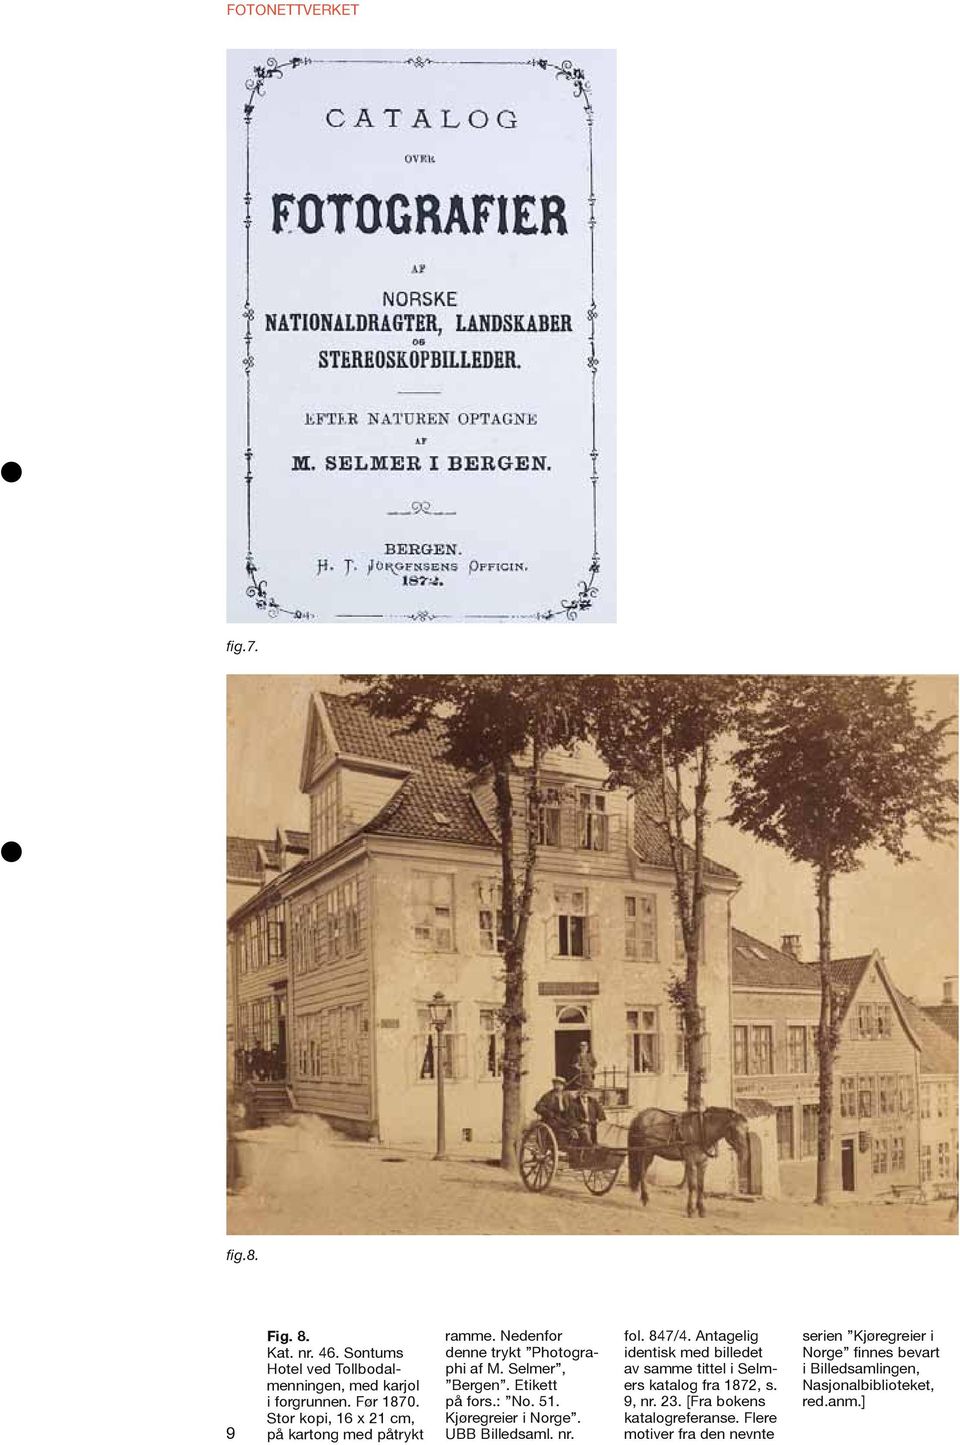 Kjøregreier i Norge. UBB Billedsaml. nr. fol. 847/4. Antagelig identisk med billedet av samme tittel i Selmers katalog fra 1872, s. 9, nr.